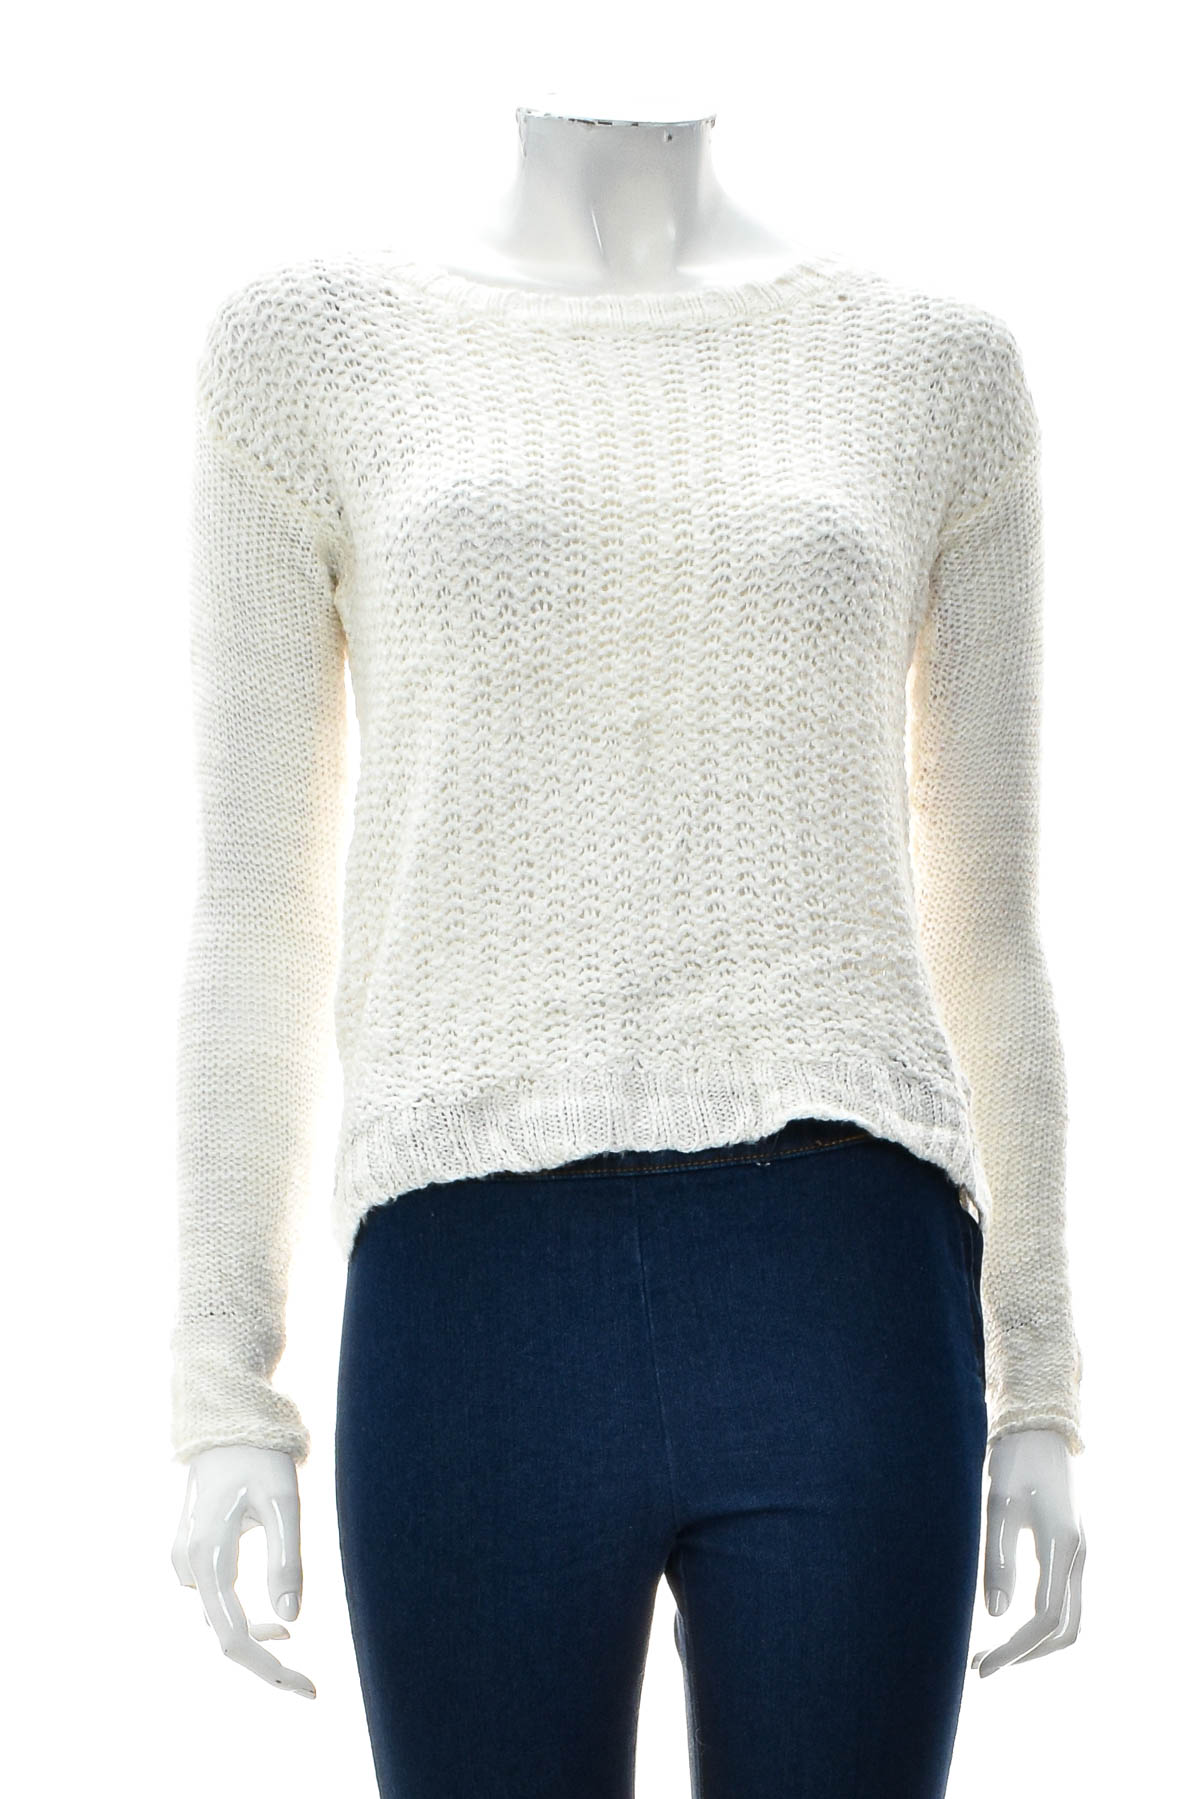 Women's sweater - AEROPOSTALE - 0